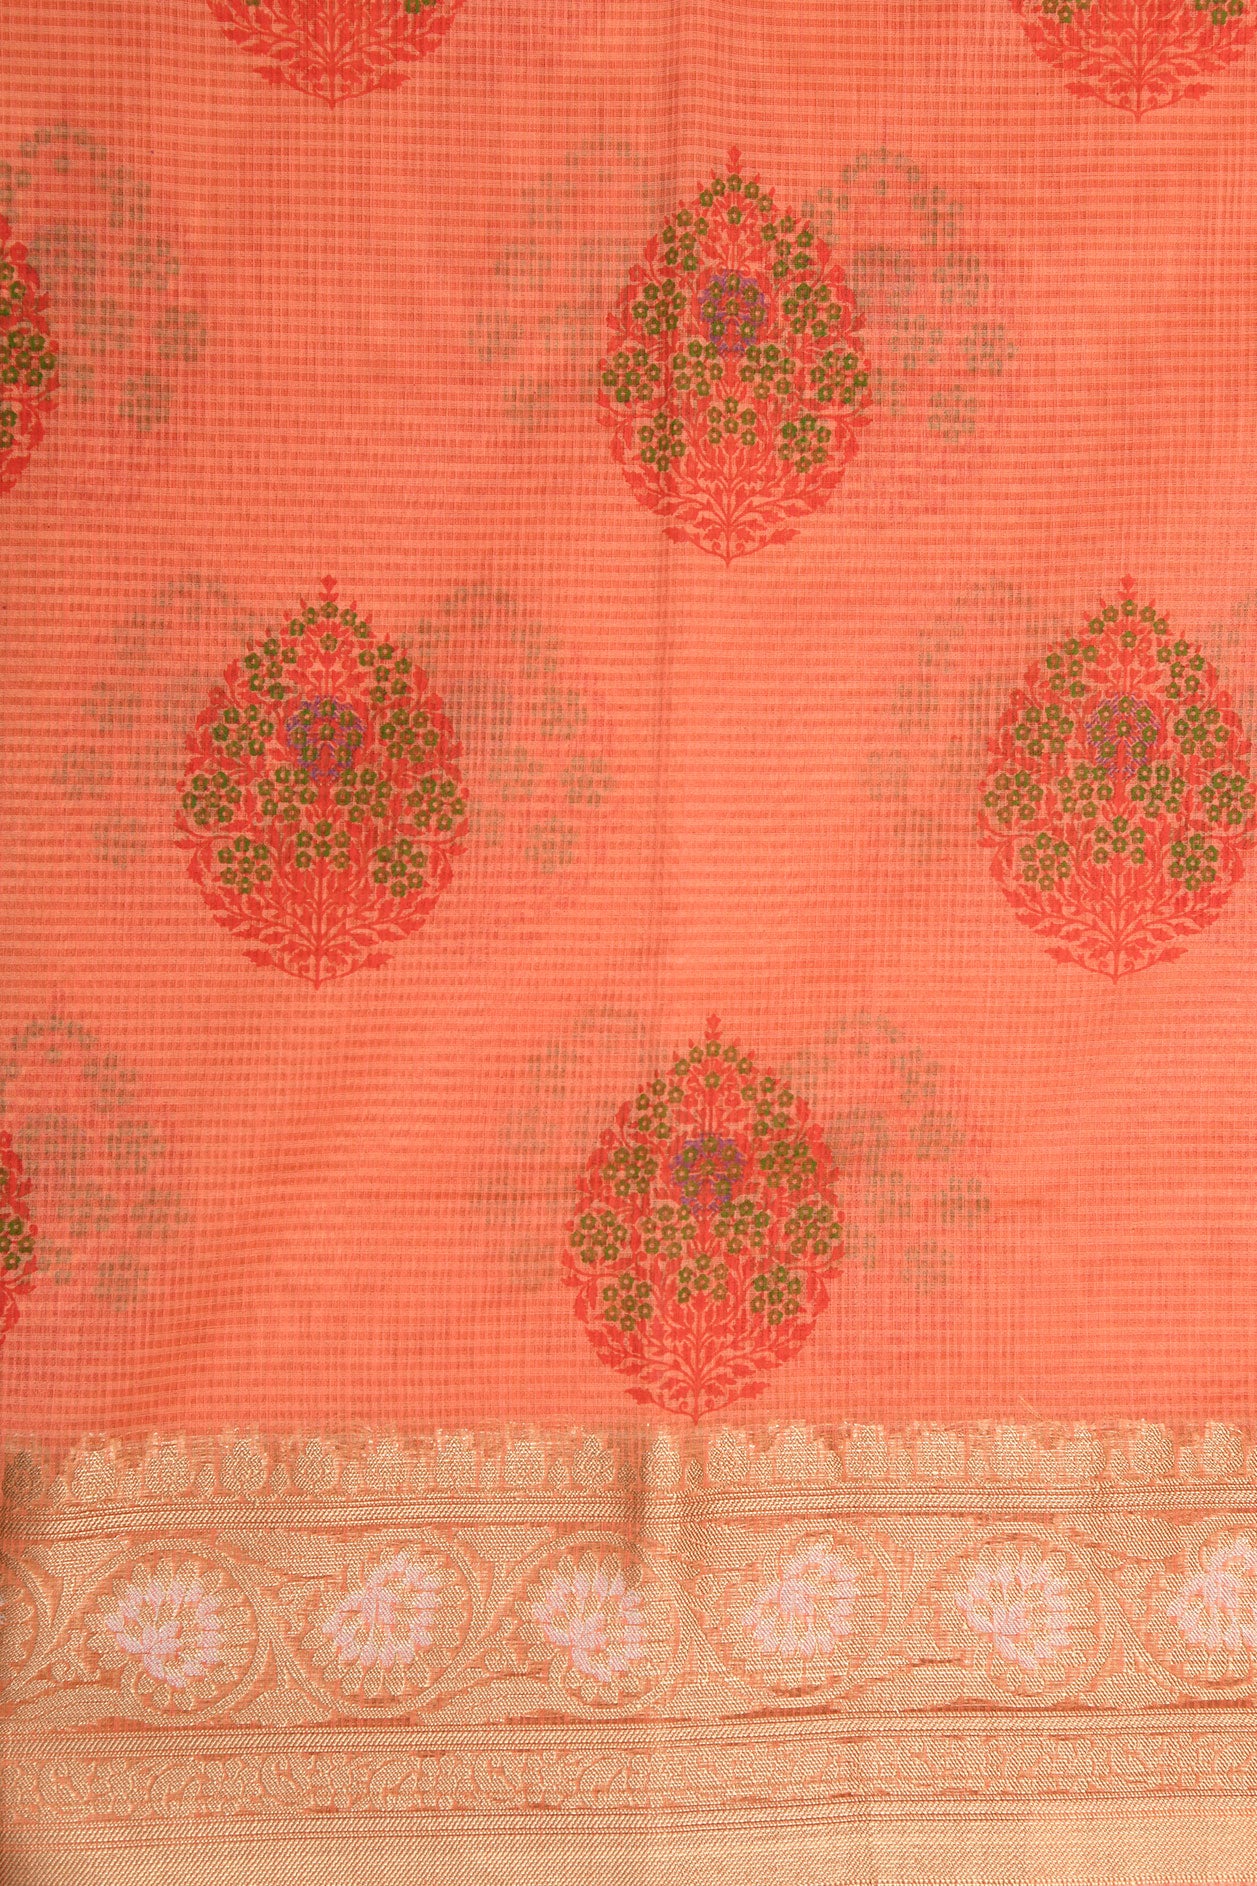 Creepers Zari Border In Floral Design Peach Orange Semi Kota Cotton Saree